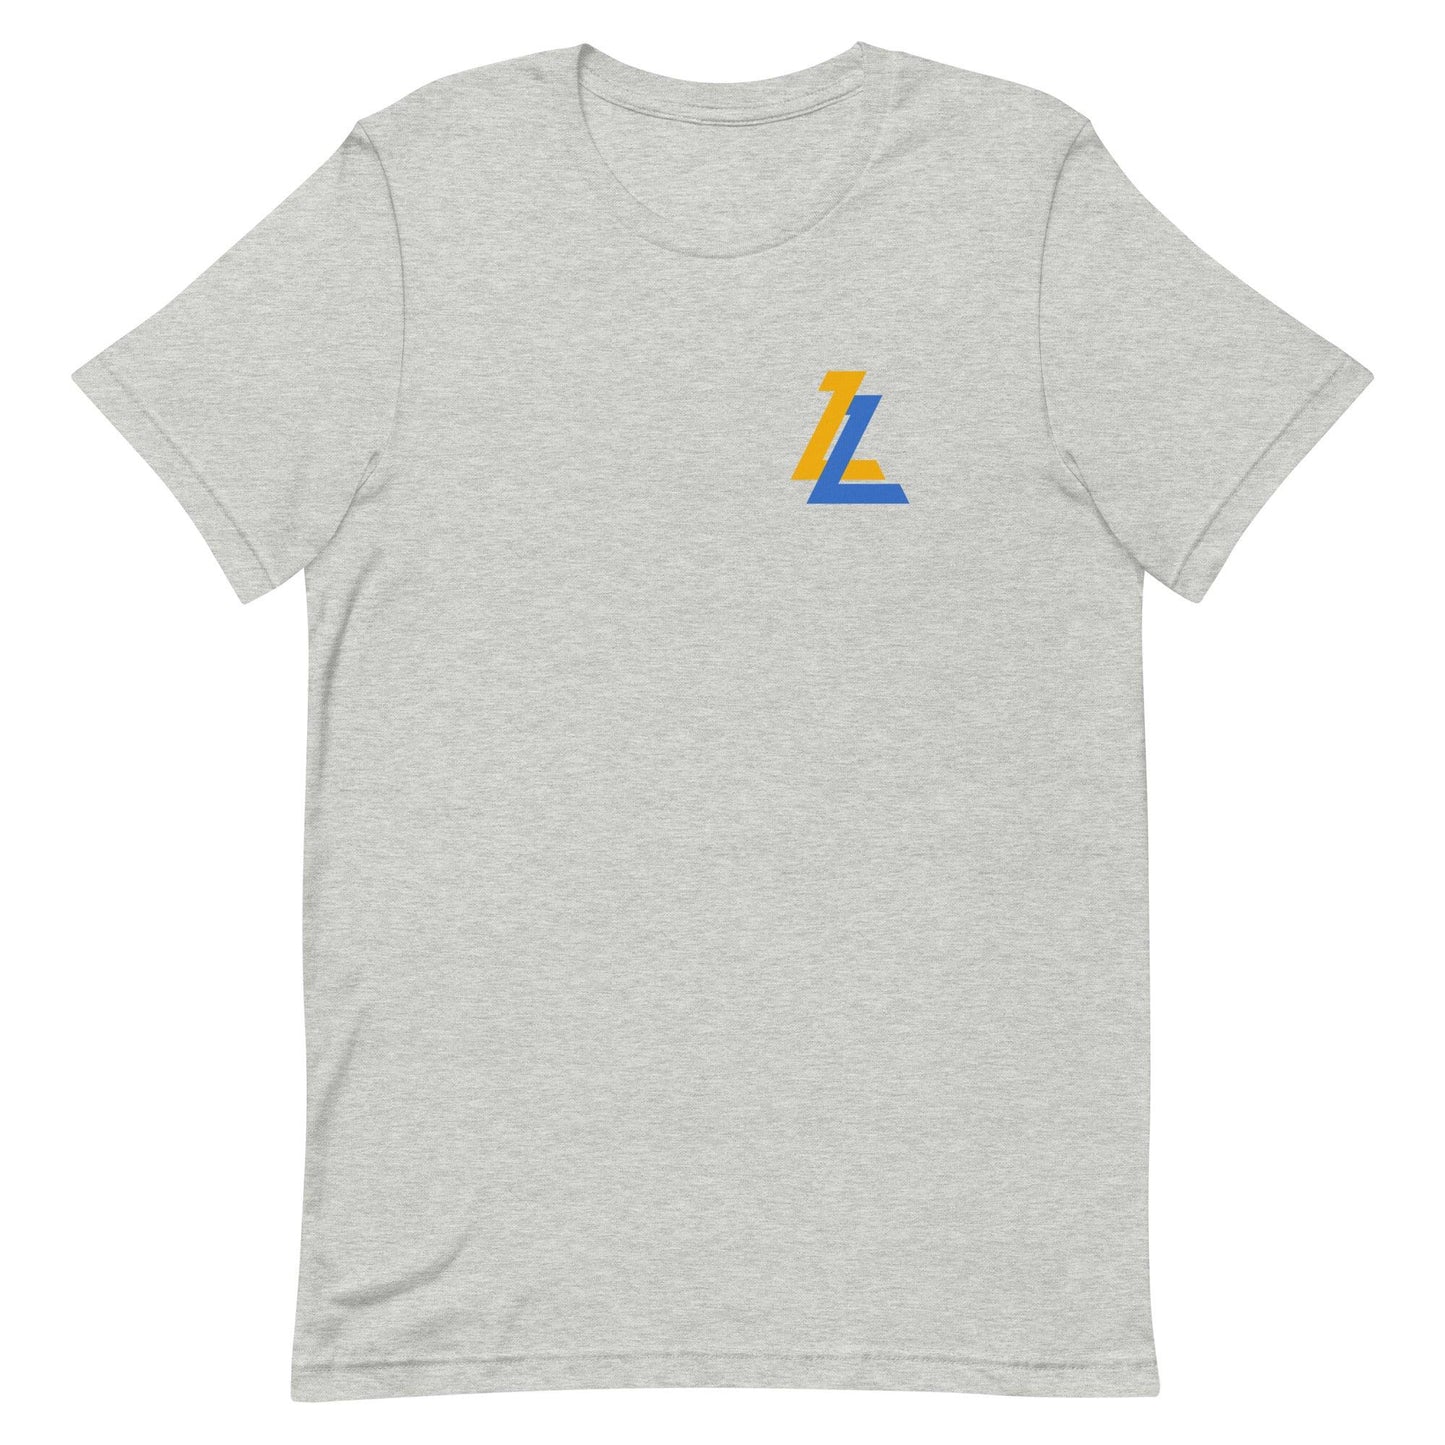 Laiatu Latu "Essential" t-shirt - Fan Arch